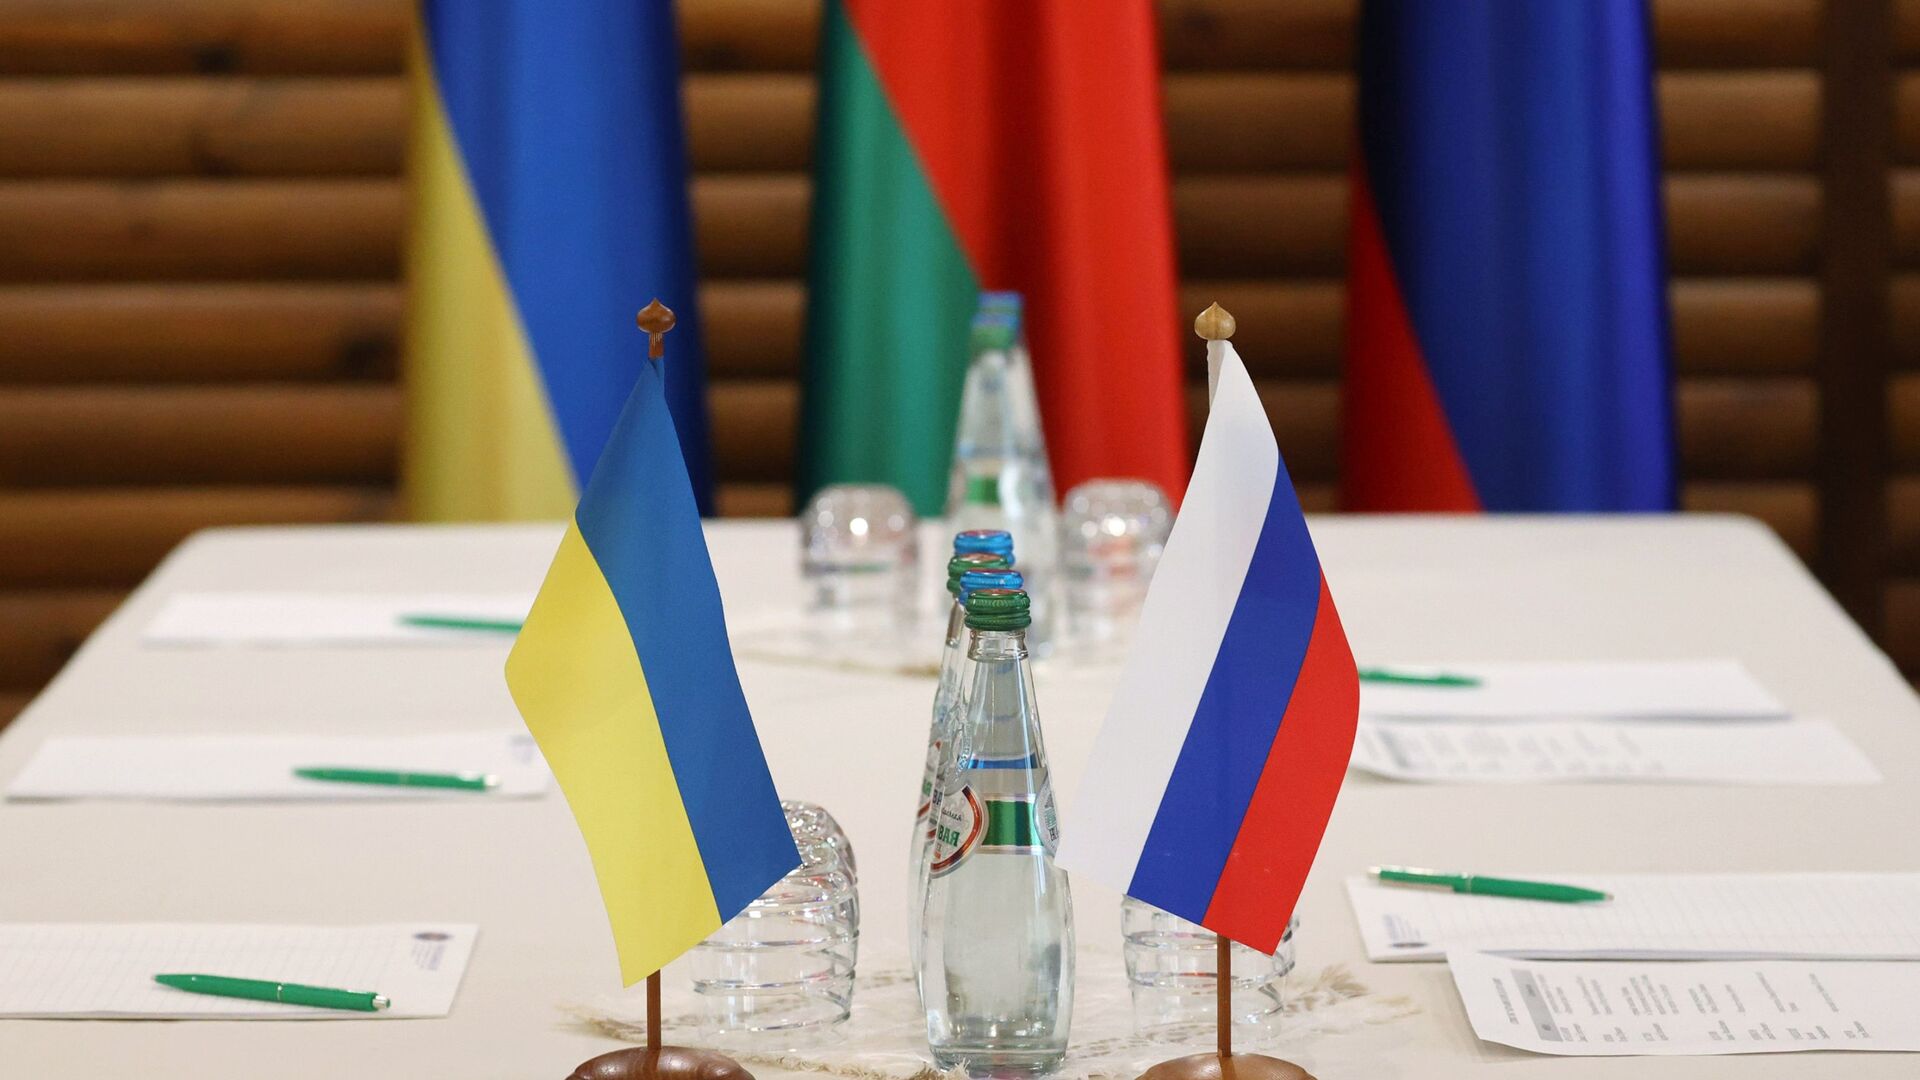 Флажки на столе, за которым пройдут российско-украинские переговоры - Sputnik Таджикистан, 1920, 03.04.2022